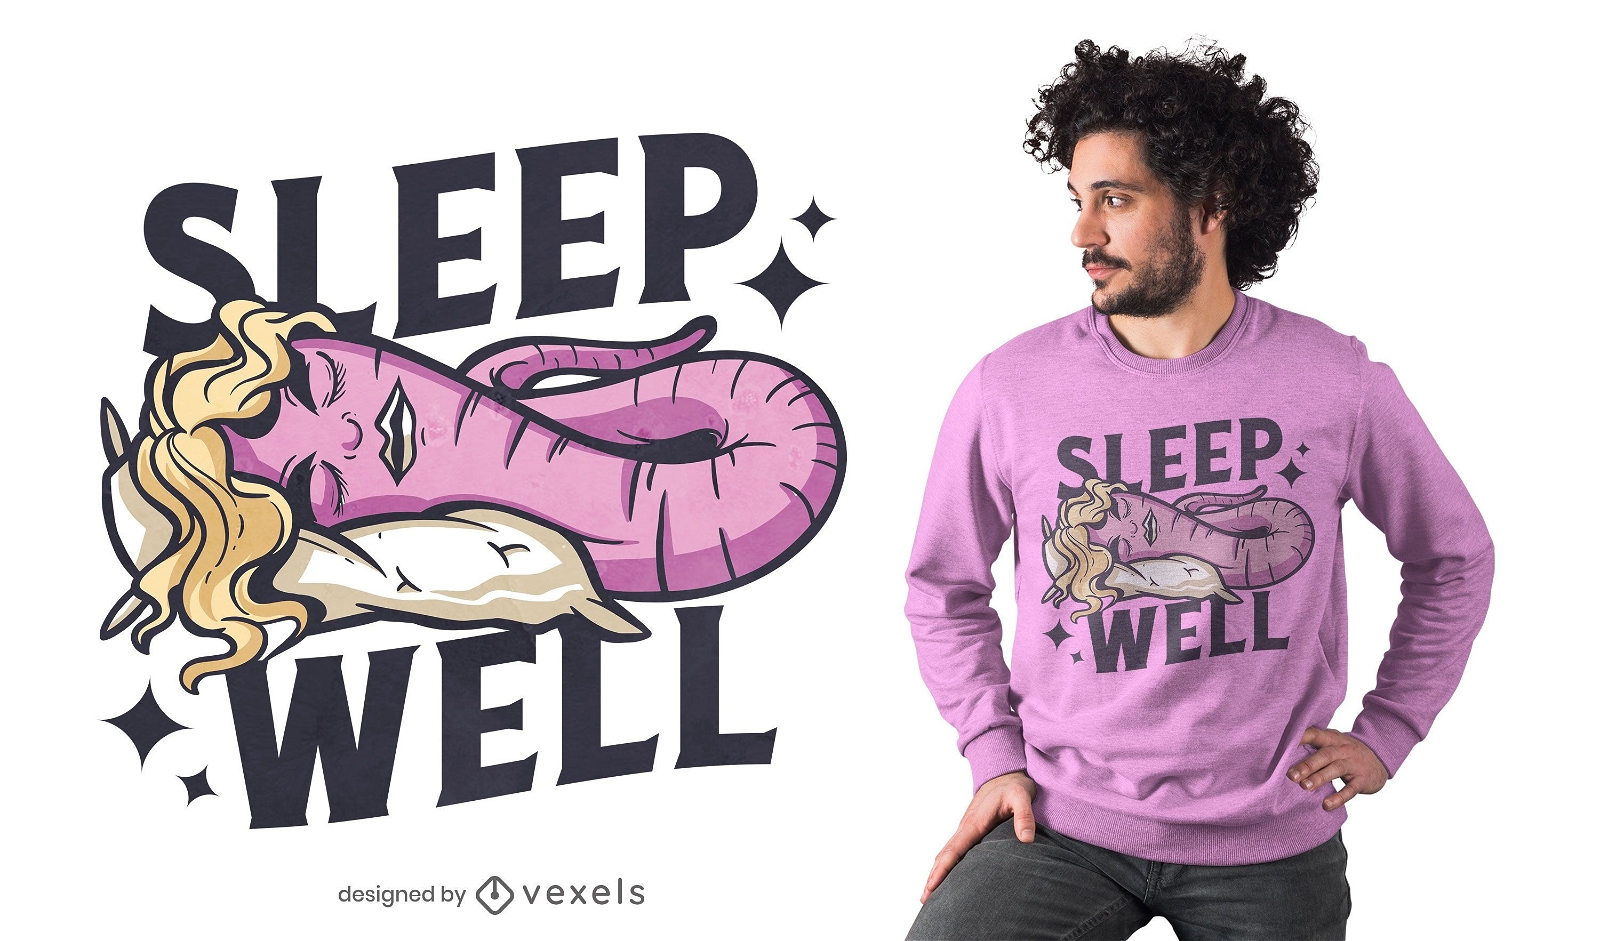 Sleep well worm t-shirt design